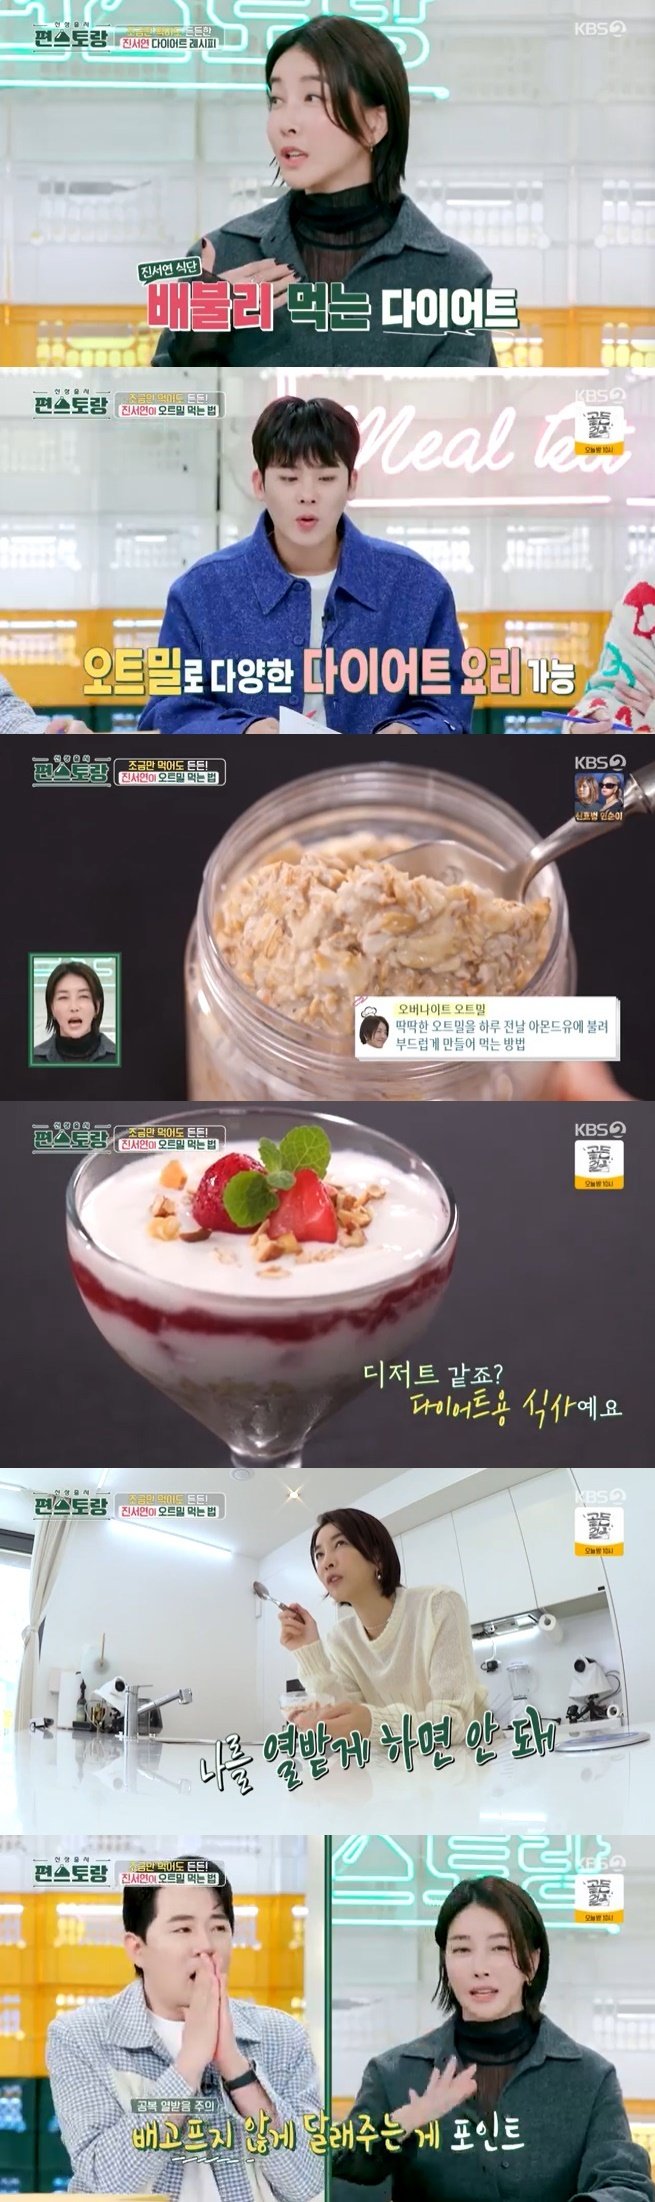 진서연 다이어트 할 땐 열받게 하면 안돼…초간단 오트밀 요리 공개